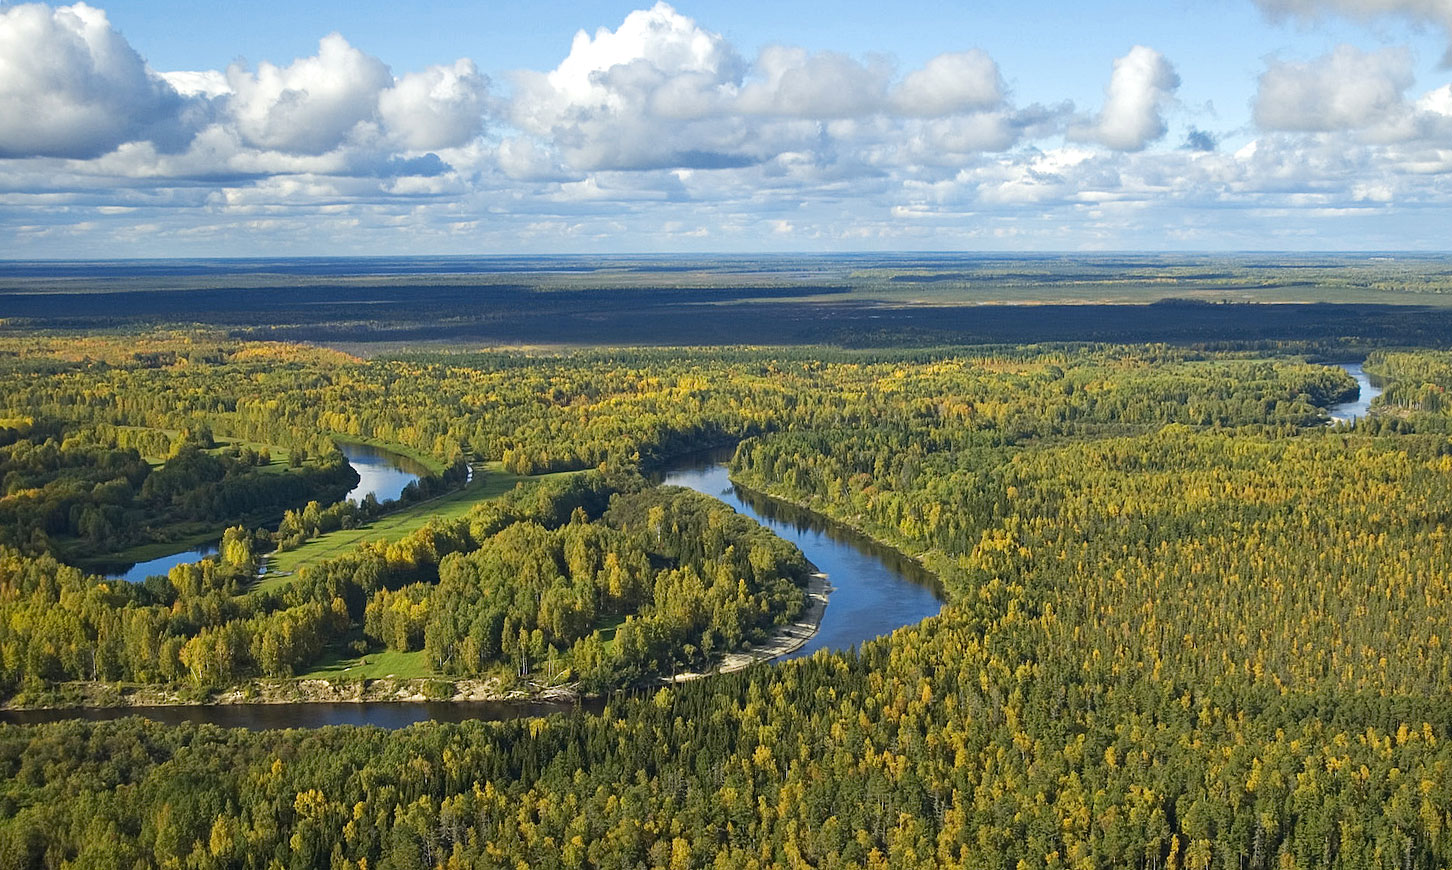 The Vasyugan River in Tomsk oblast, Siberia